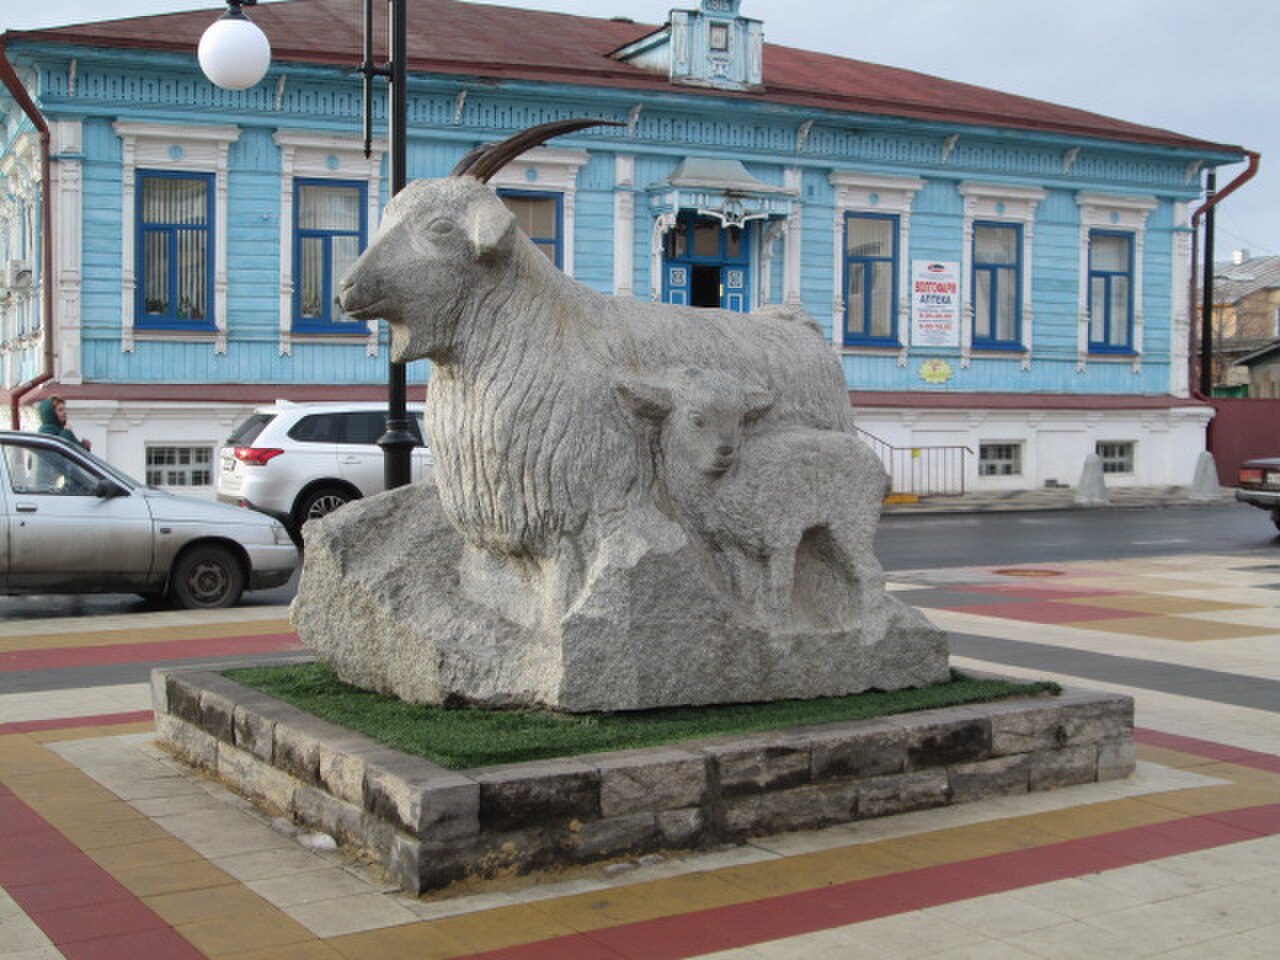 Урюпинск музей козы